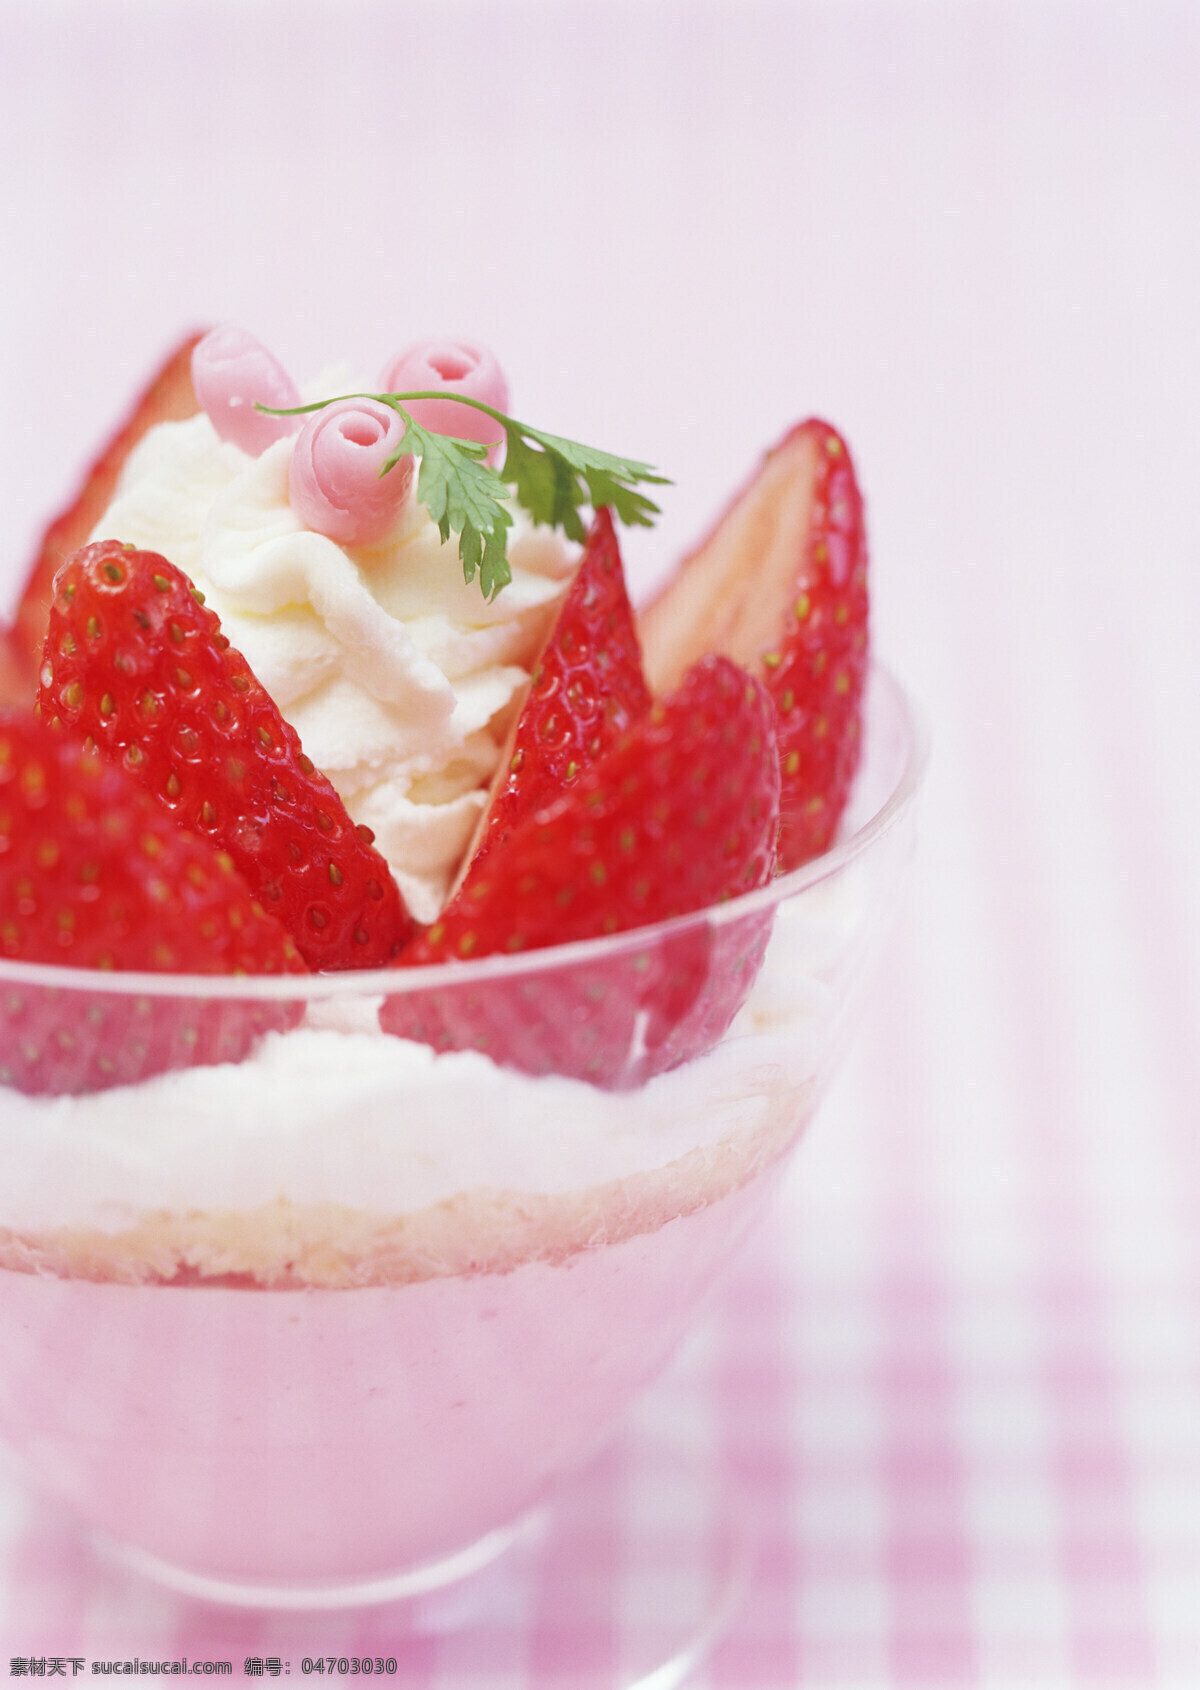 清凉 一夏 草莓 白雪 甜甜 港式甜品 草莓白雪甜甜 夏日甜品